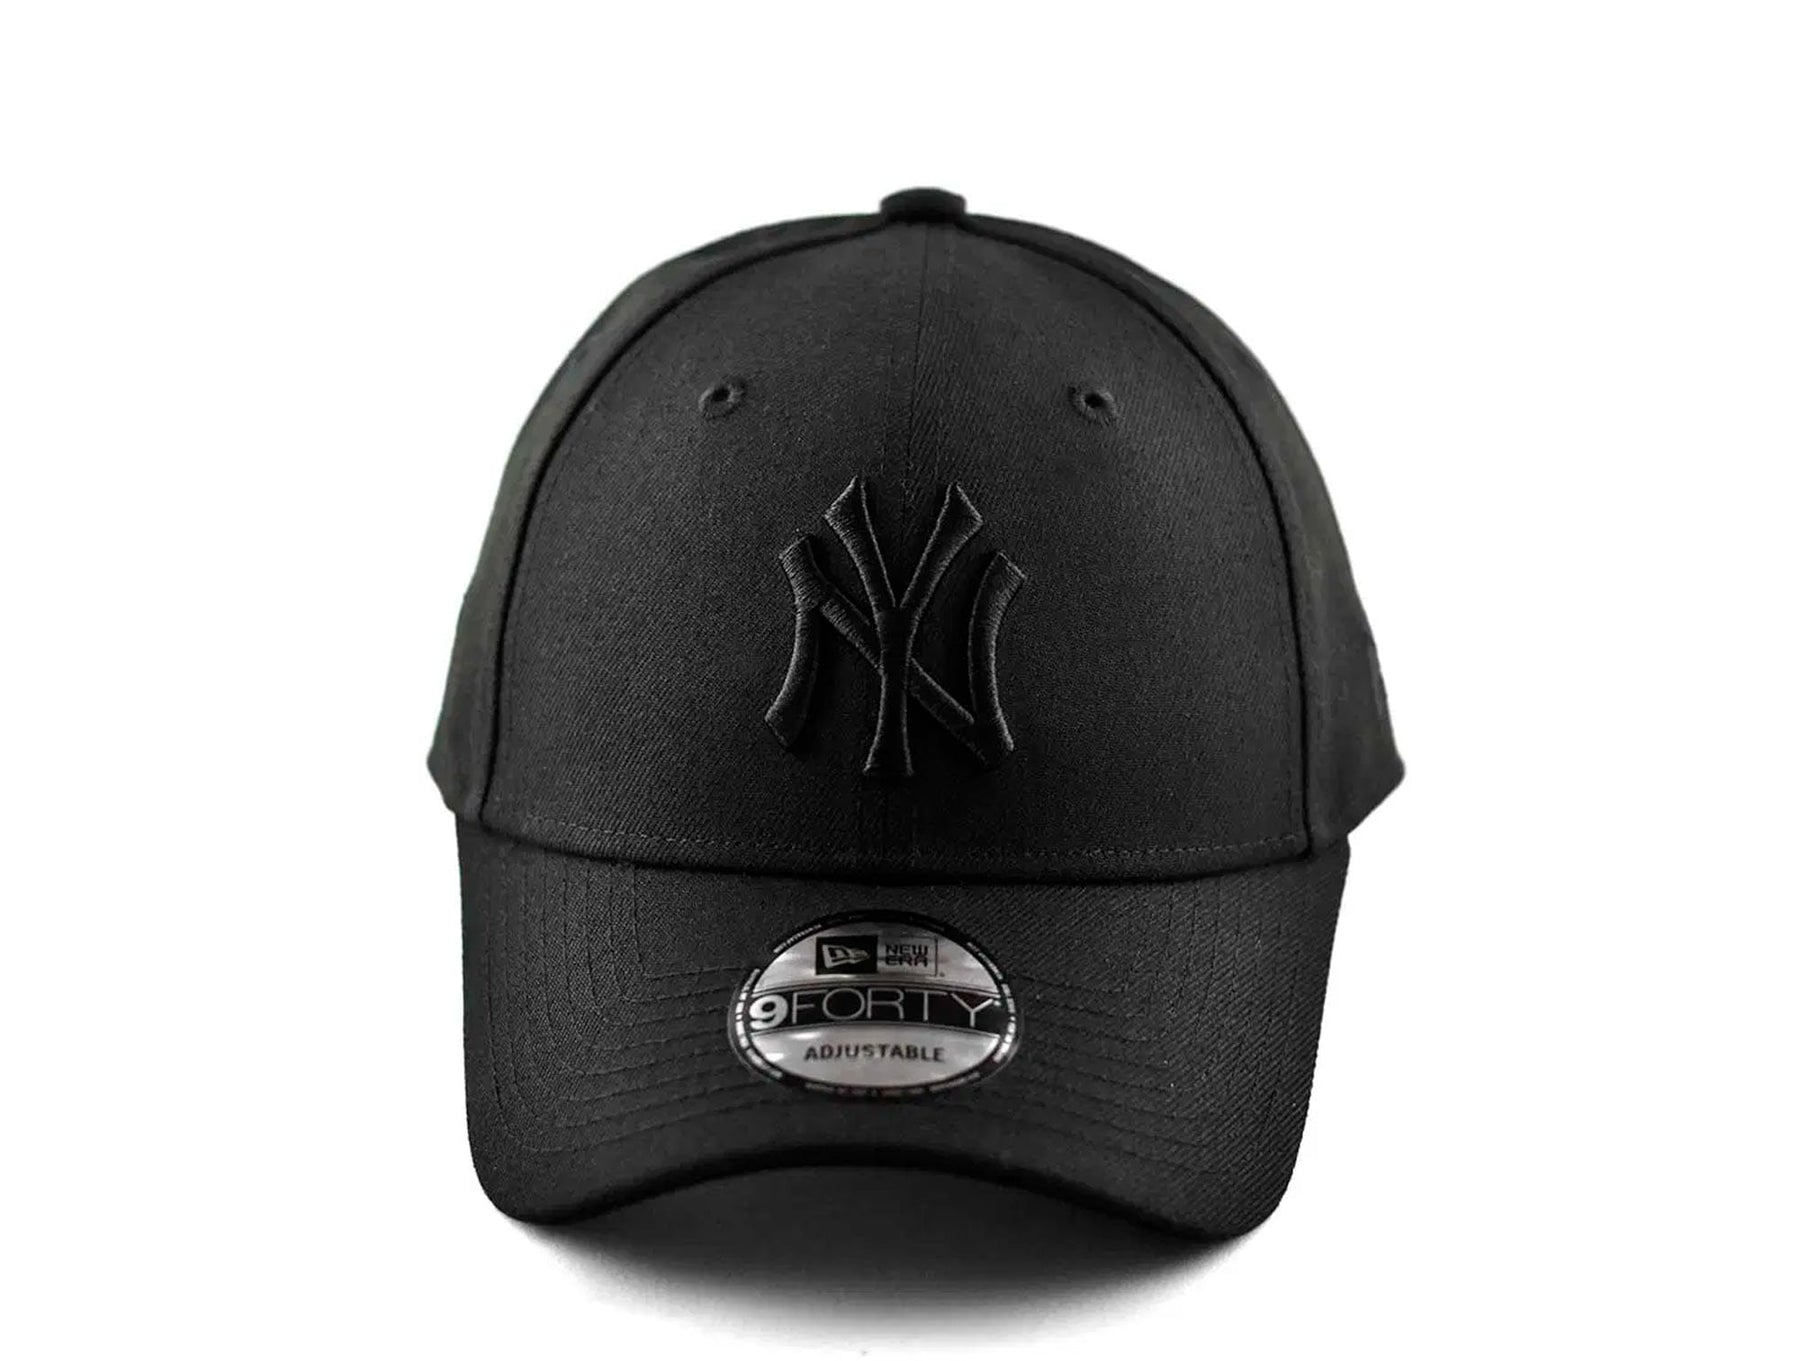 New Era NY Yankees - Negro - Gorra Hombre